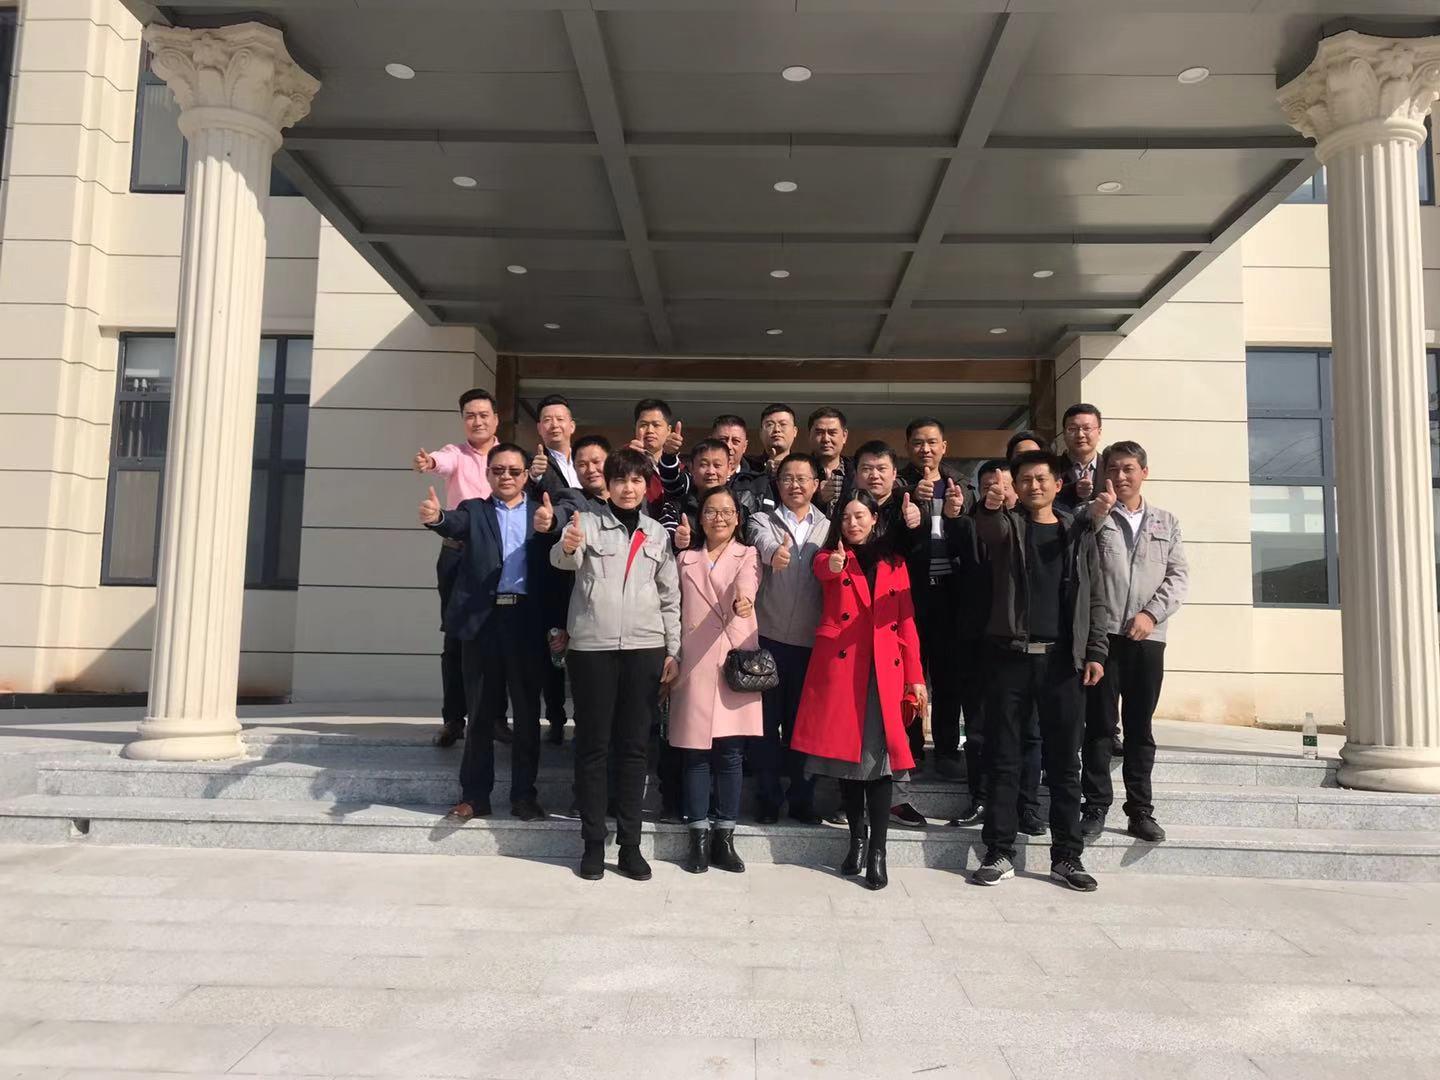 景荣控股2018战略发展研讨会于11月24日在江西省上饶市三清山 - 道教的发源地隆重举行。